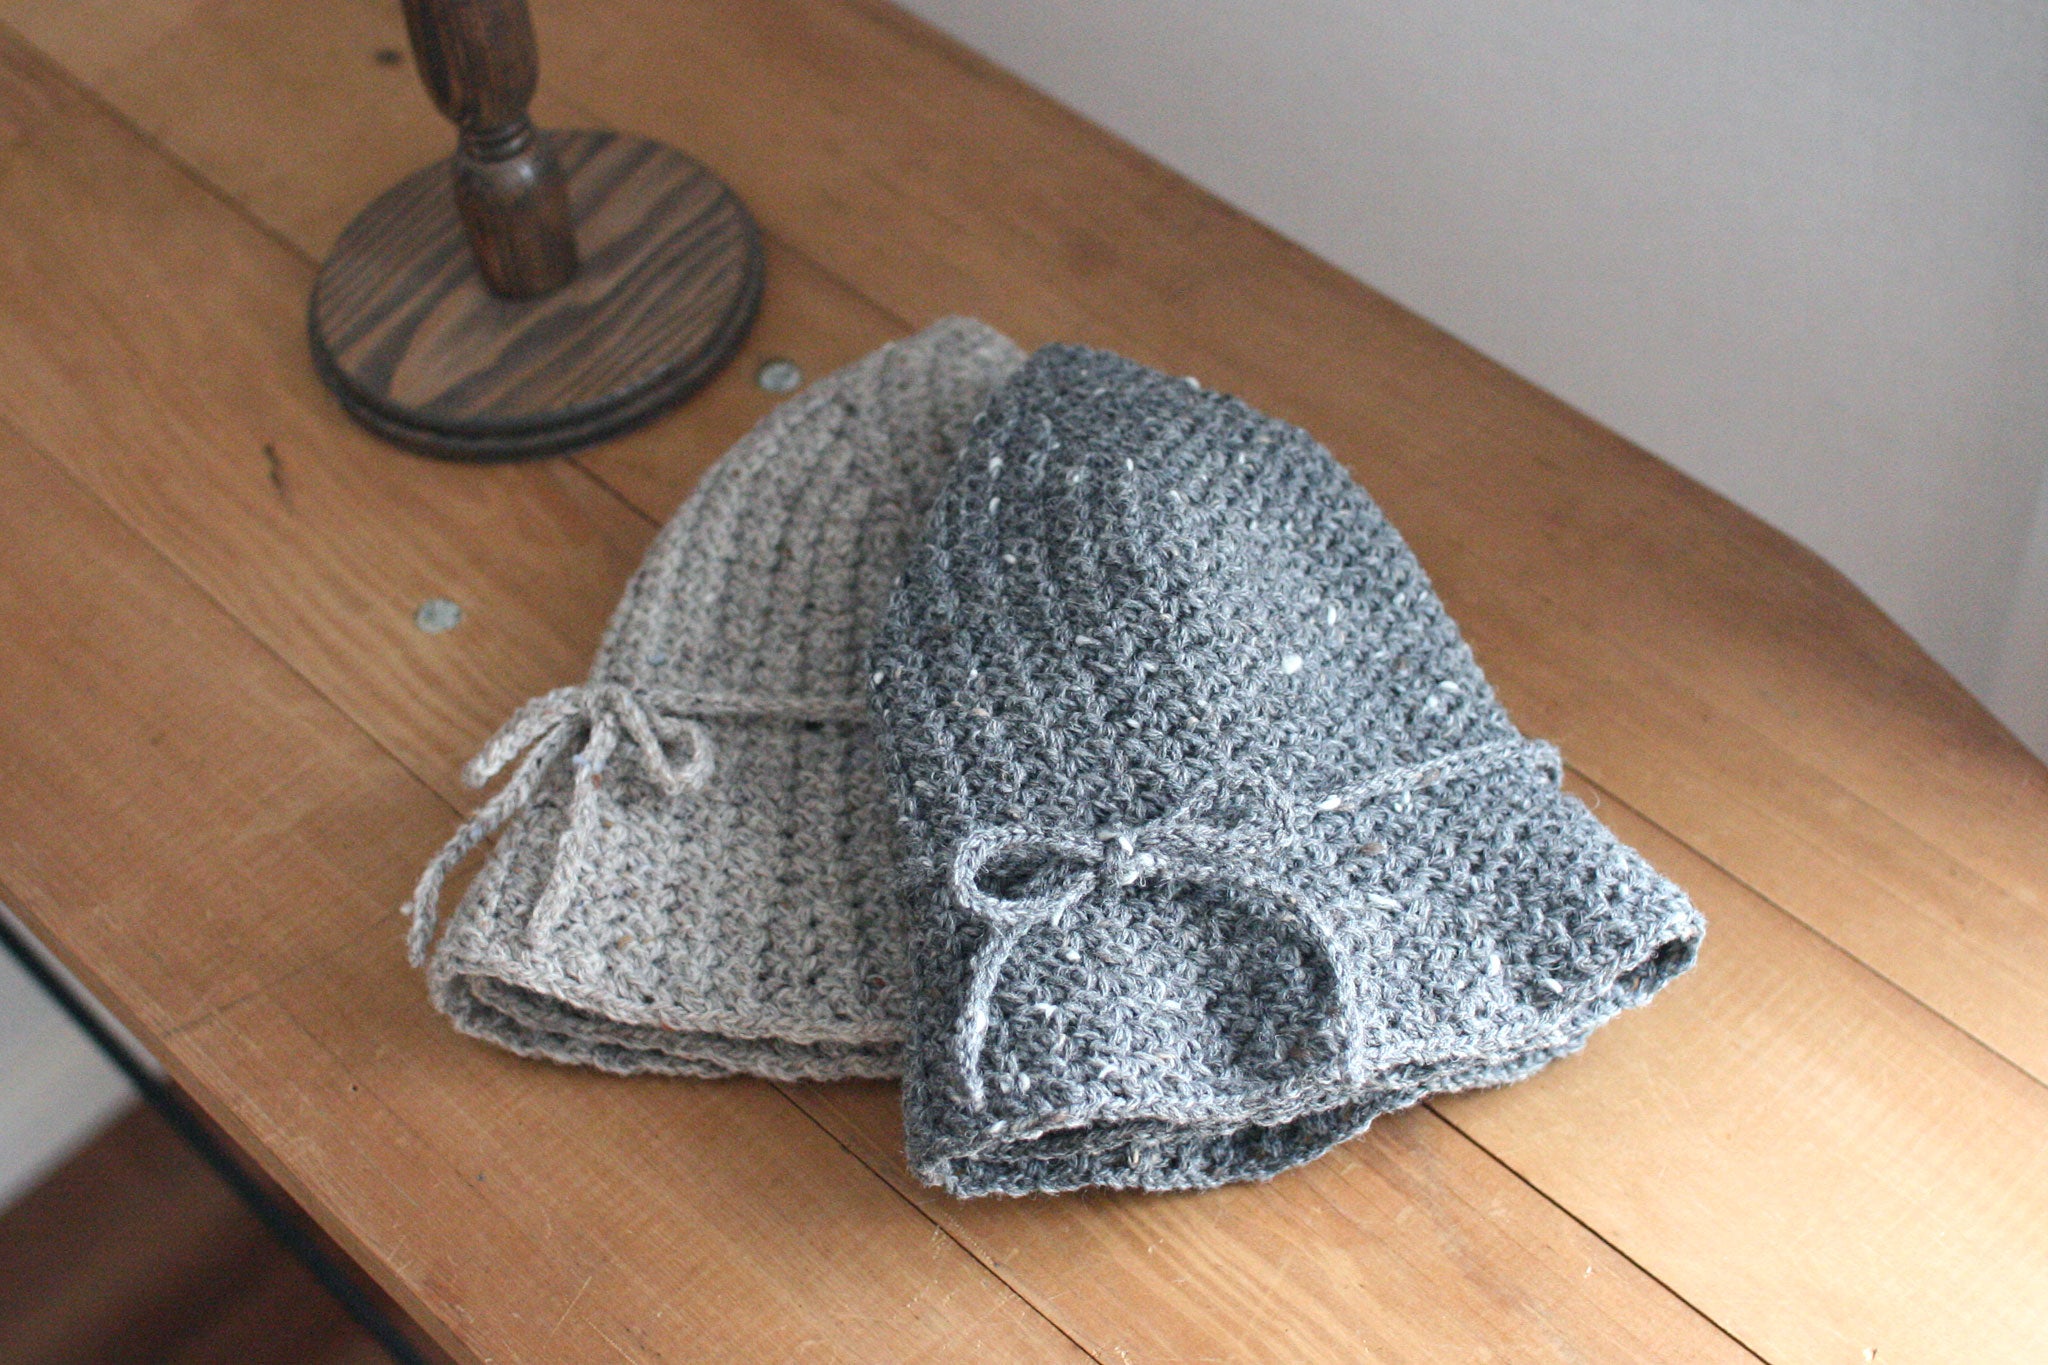 "Winter hat" Crochet Pattern